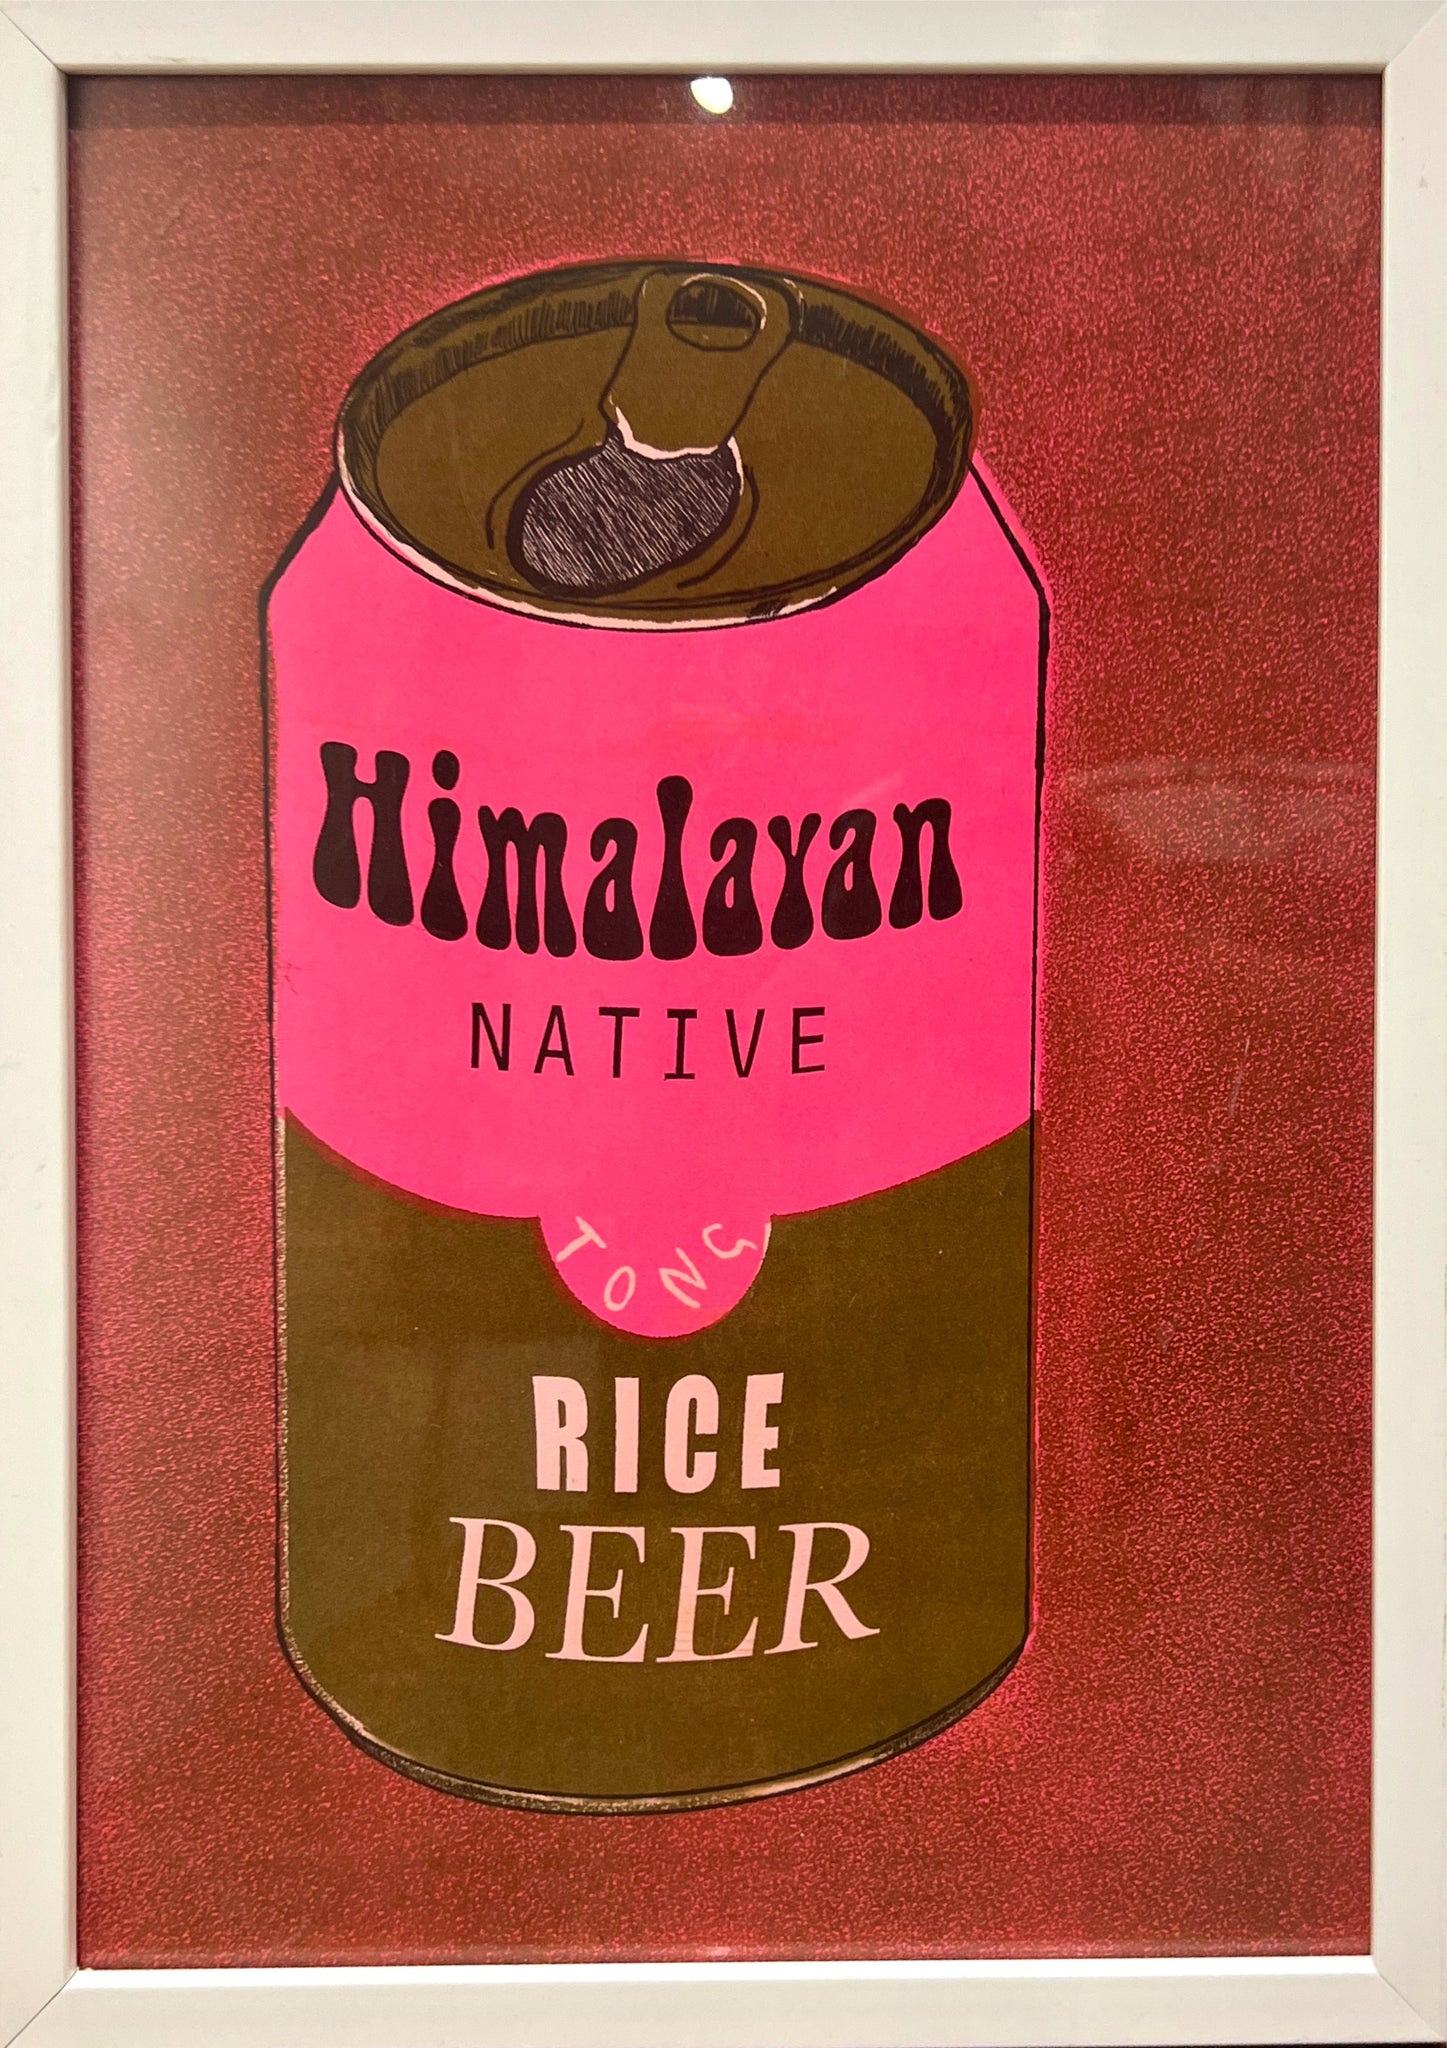 "Himalayan beer" by Aqui Thami